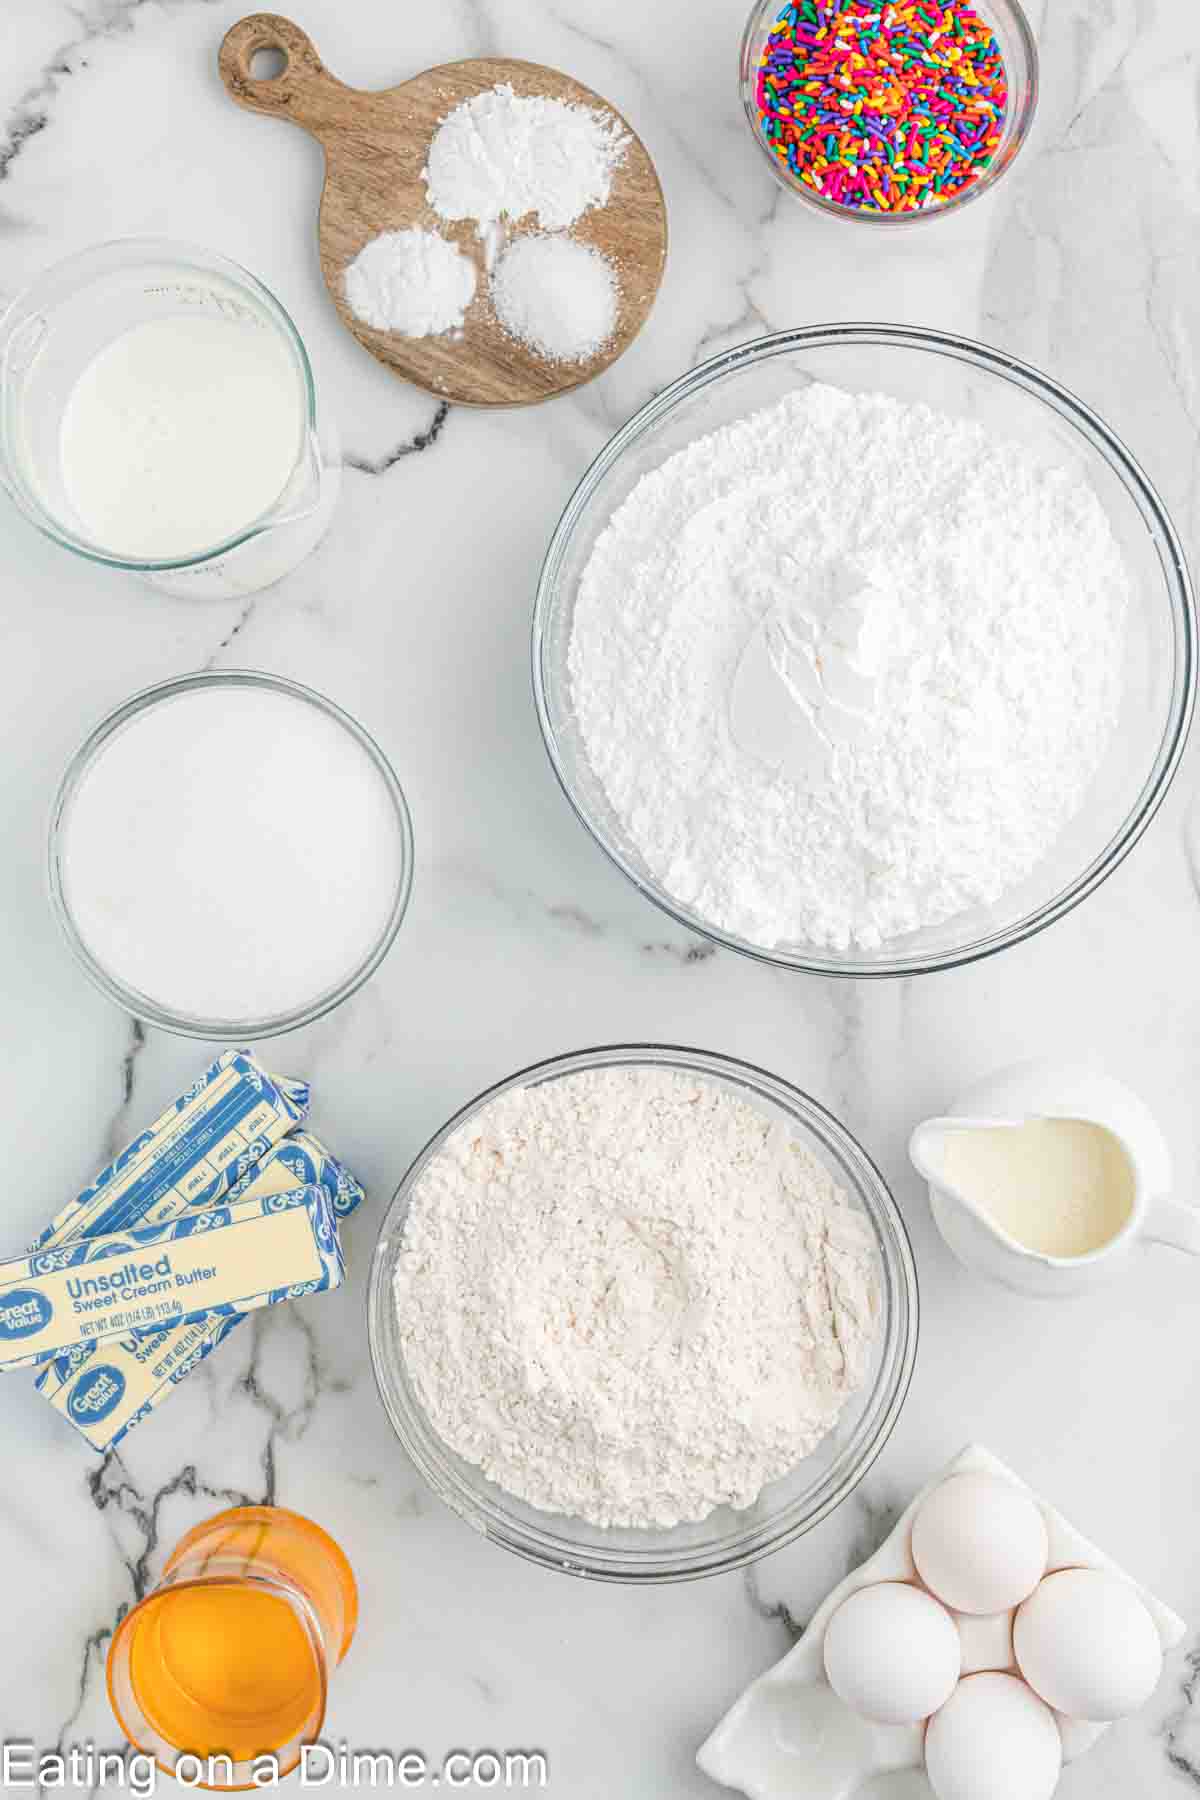 Ingredients needed - flour, baking powder, baking soda, salt, eggs, sugar, vanilla extract, oil, buttermilk, sprinkles, butter, powdered sugar, heavy cream